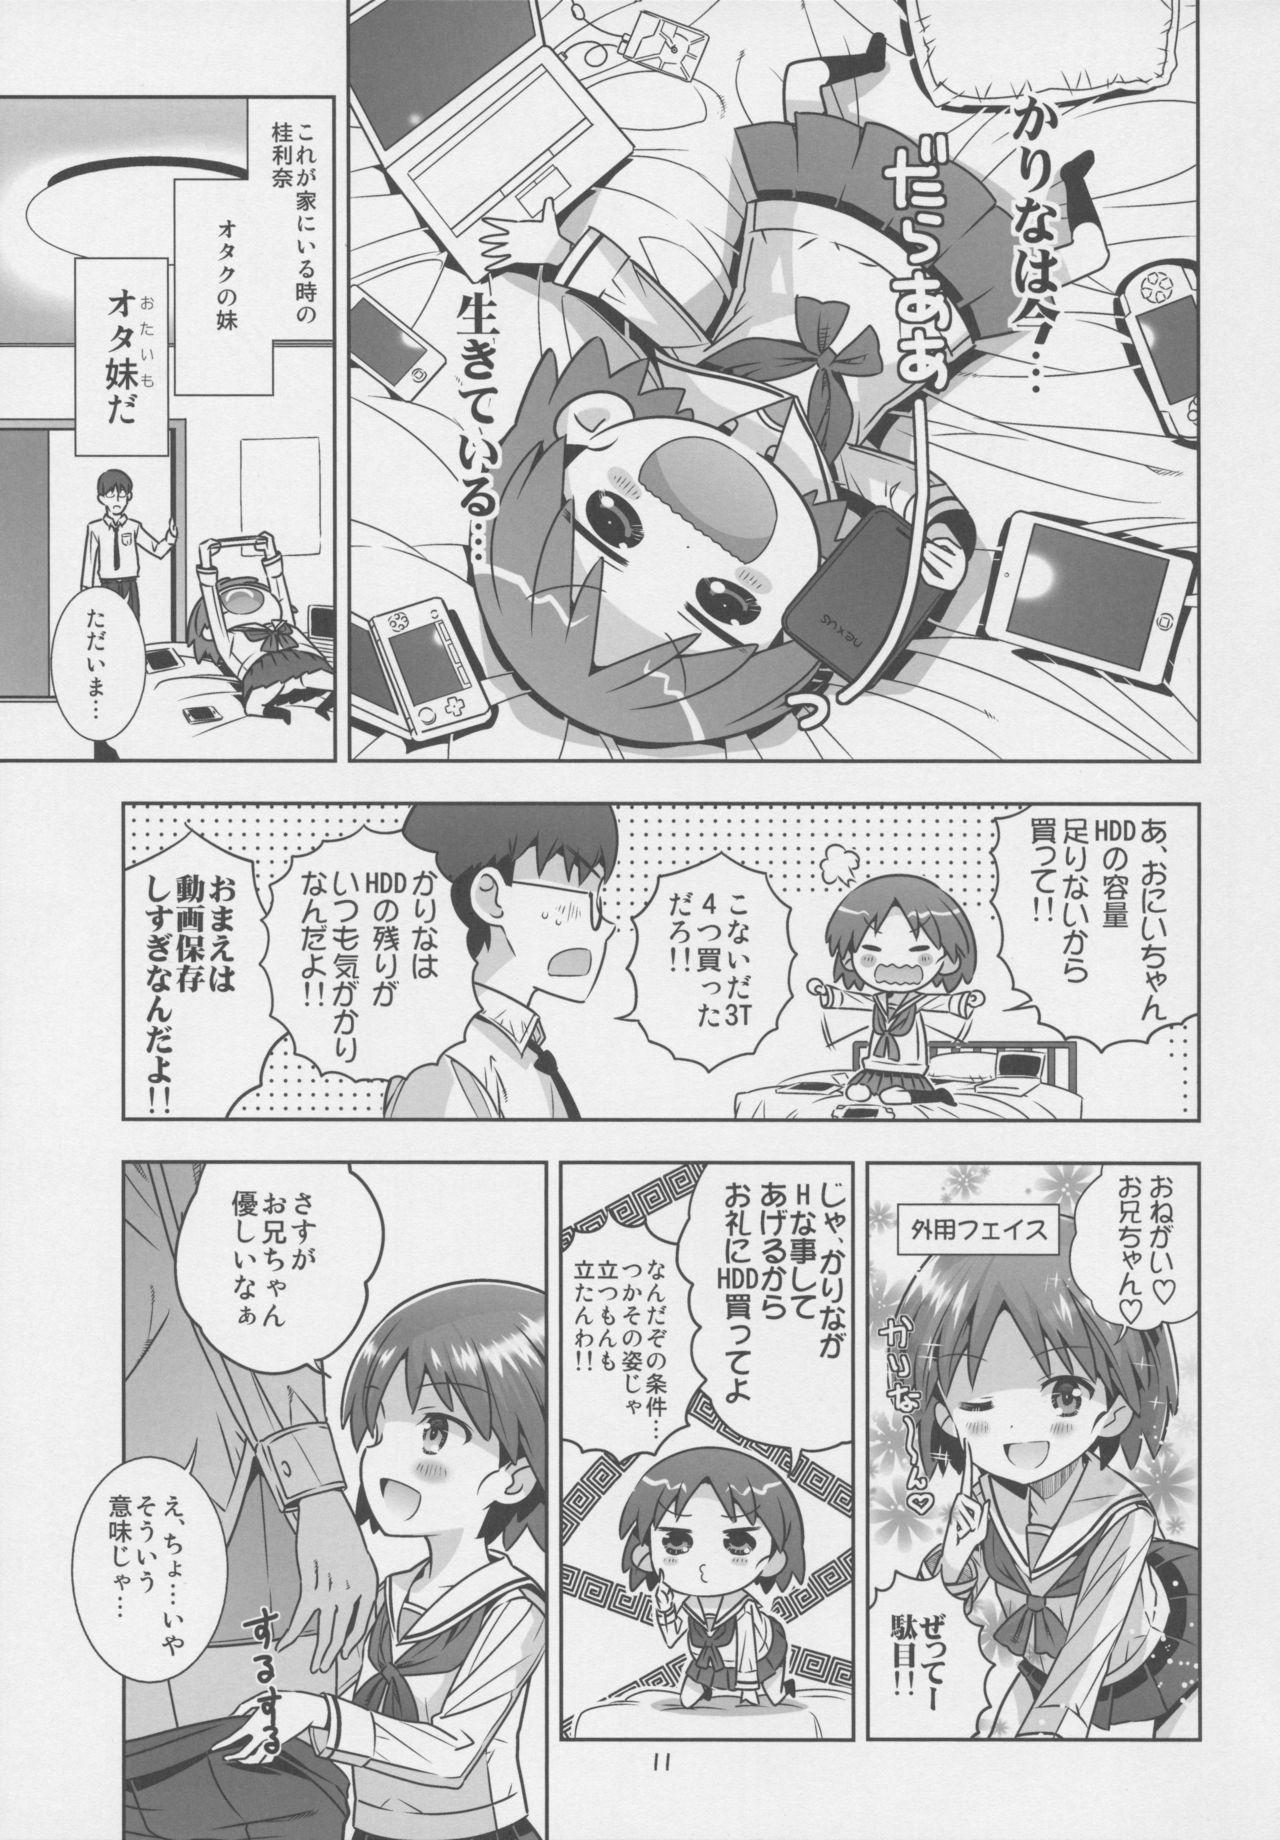 Puto "AV Shutsuen, Ganbarimasu!!" Ichinensei wa, M-ji Kaikyaku 3 Peace desu! - Girls und panzer Cameltoe - Page 10